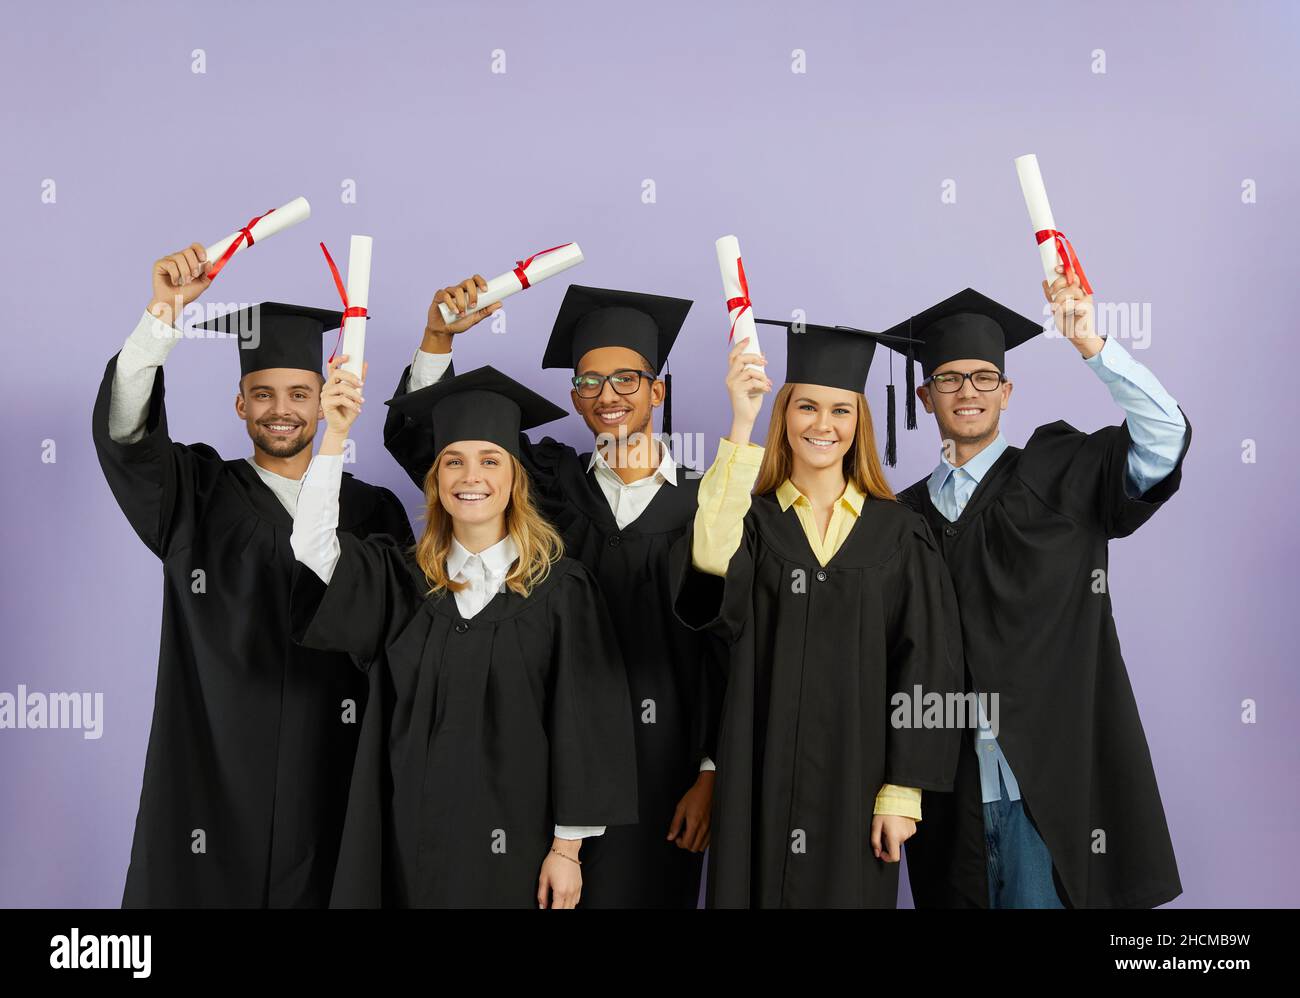 Felice università multirazziale laureati in berretti e camici che tengono in mano i diplomi e sorridenti Foto Stock